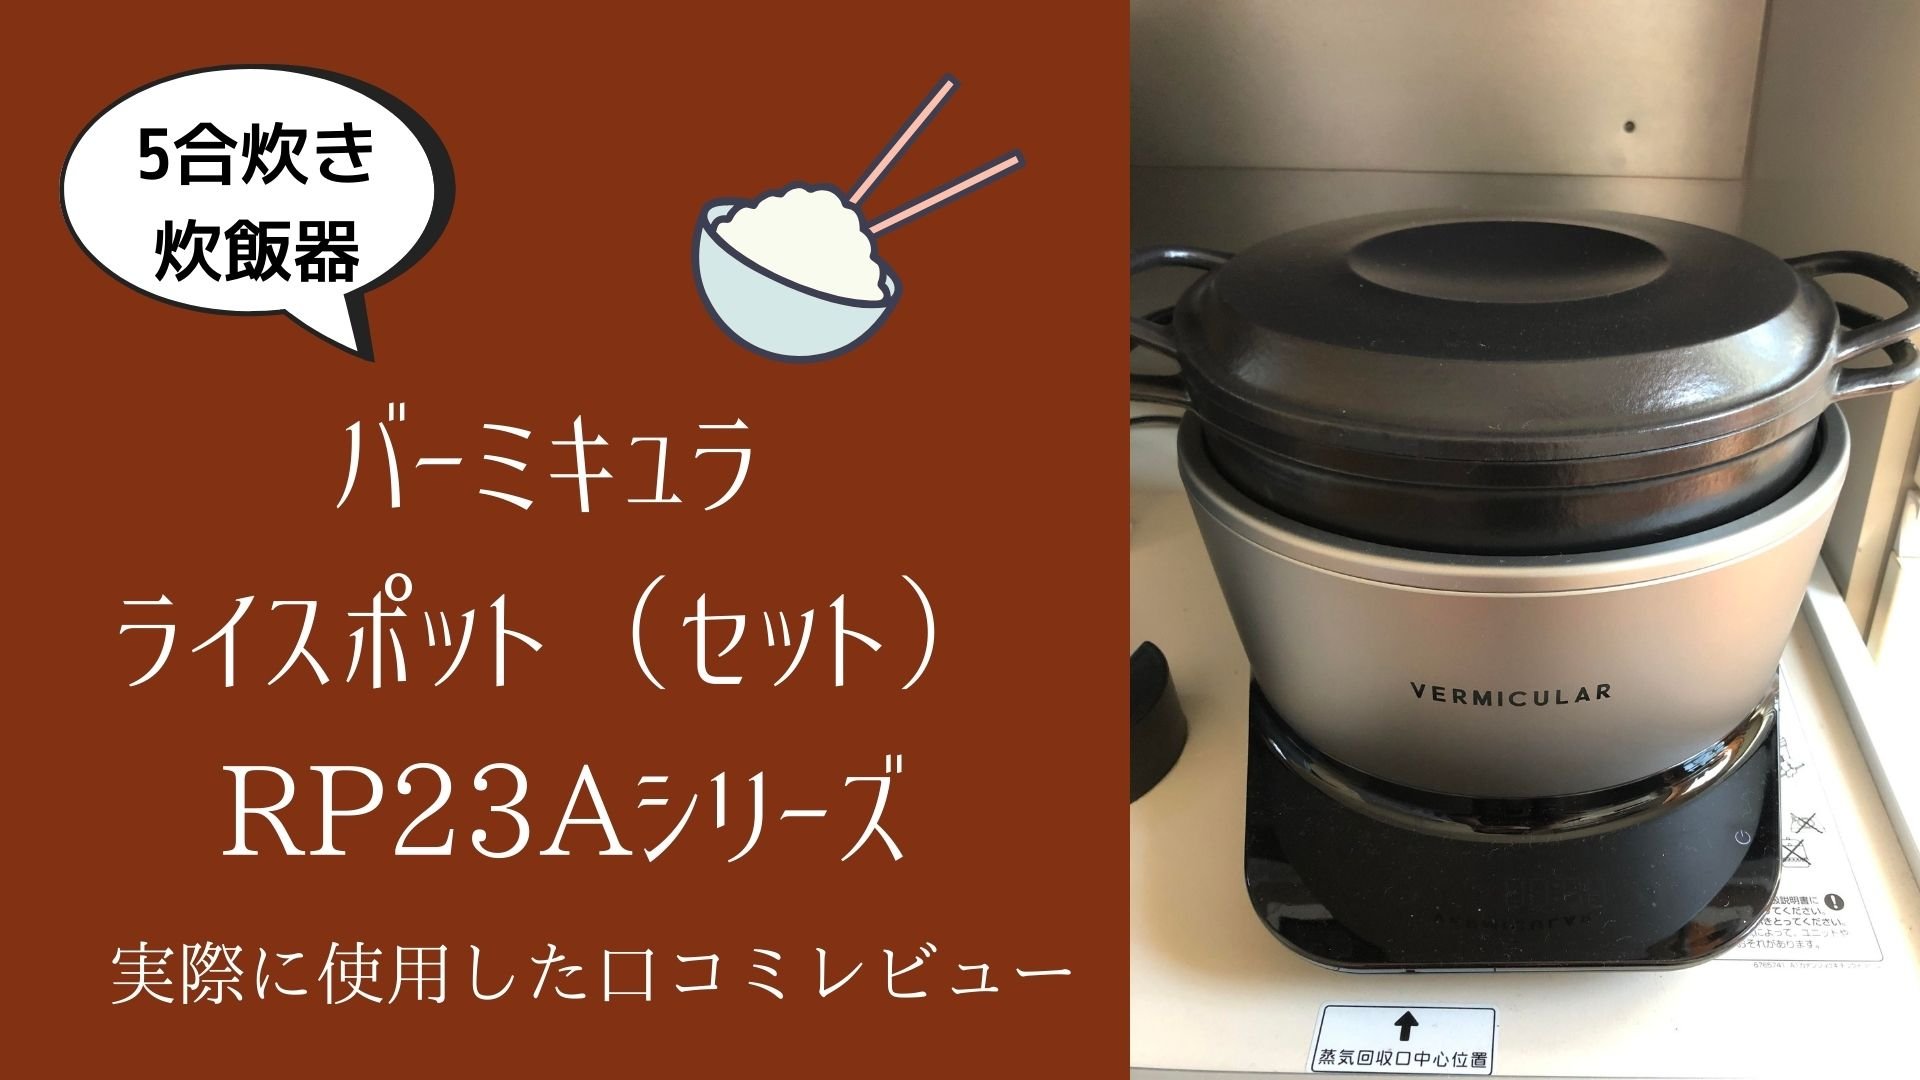 【値下げ】RP23A-SV IH5合炊き バーミキュラライスポット